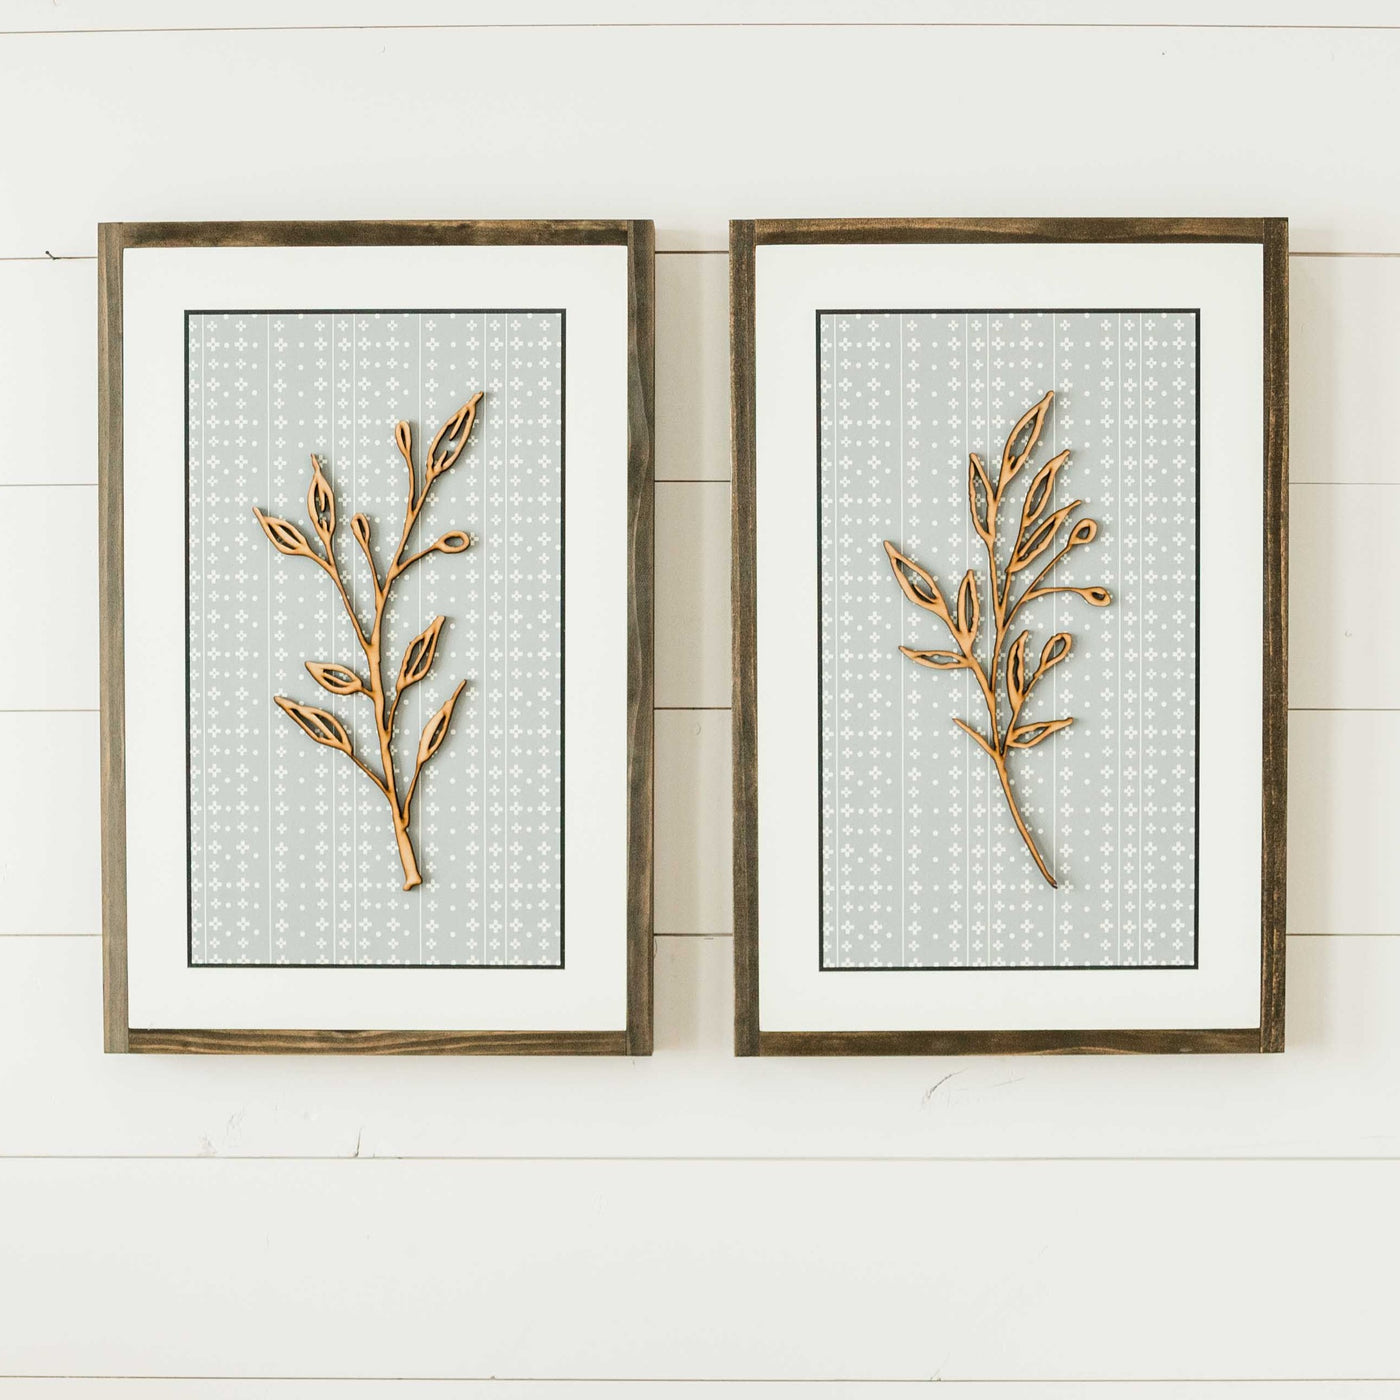 Willow & Sage Botanical | Pair or Single